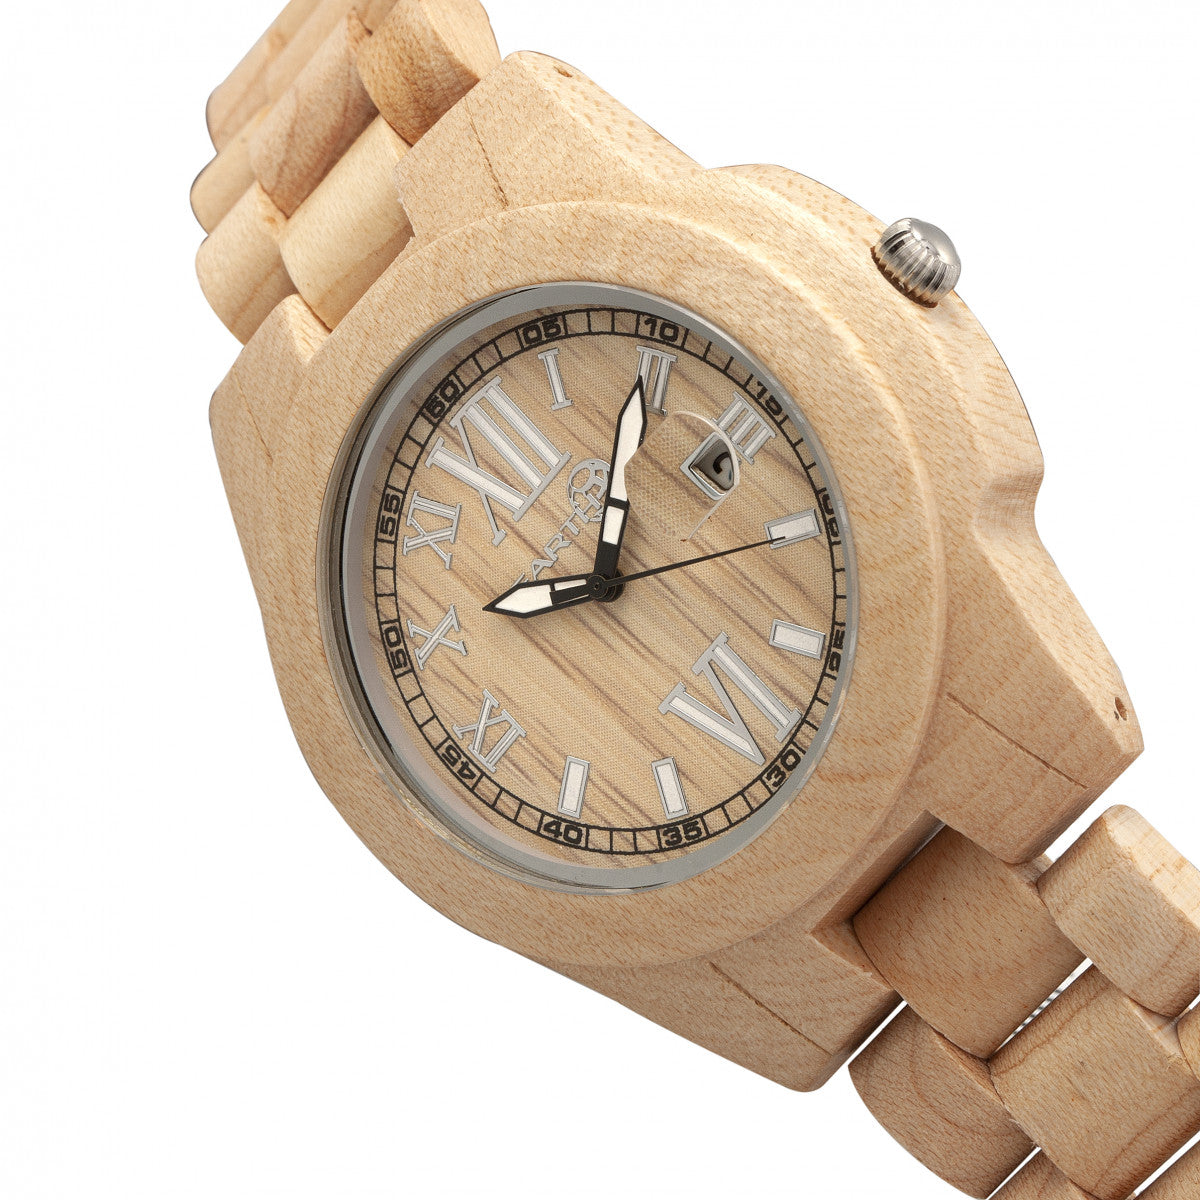 Earth Wood Heartwood Bracelet Watch w/Date - Khaki/Tan - ETHEW1501